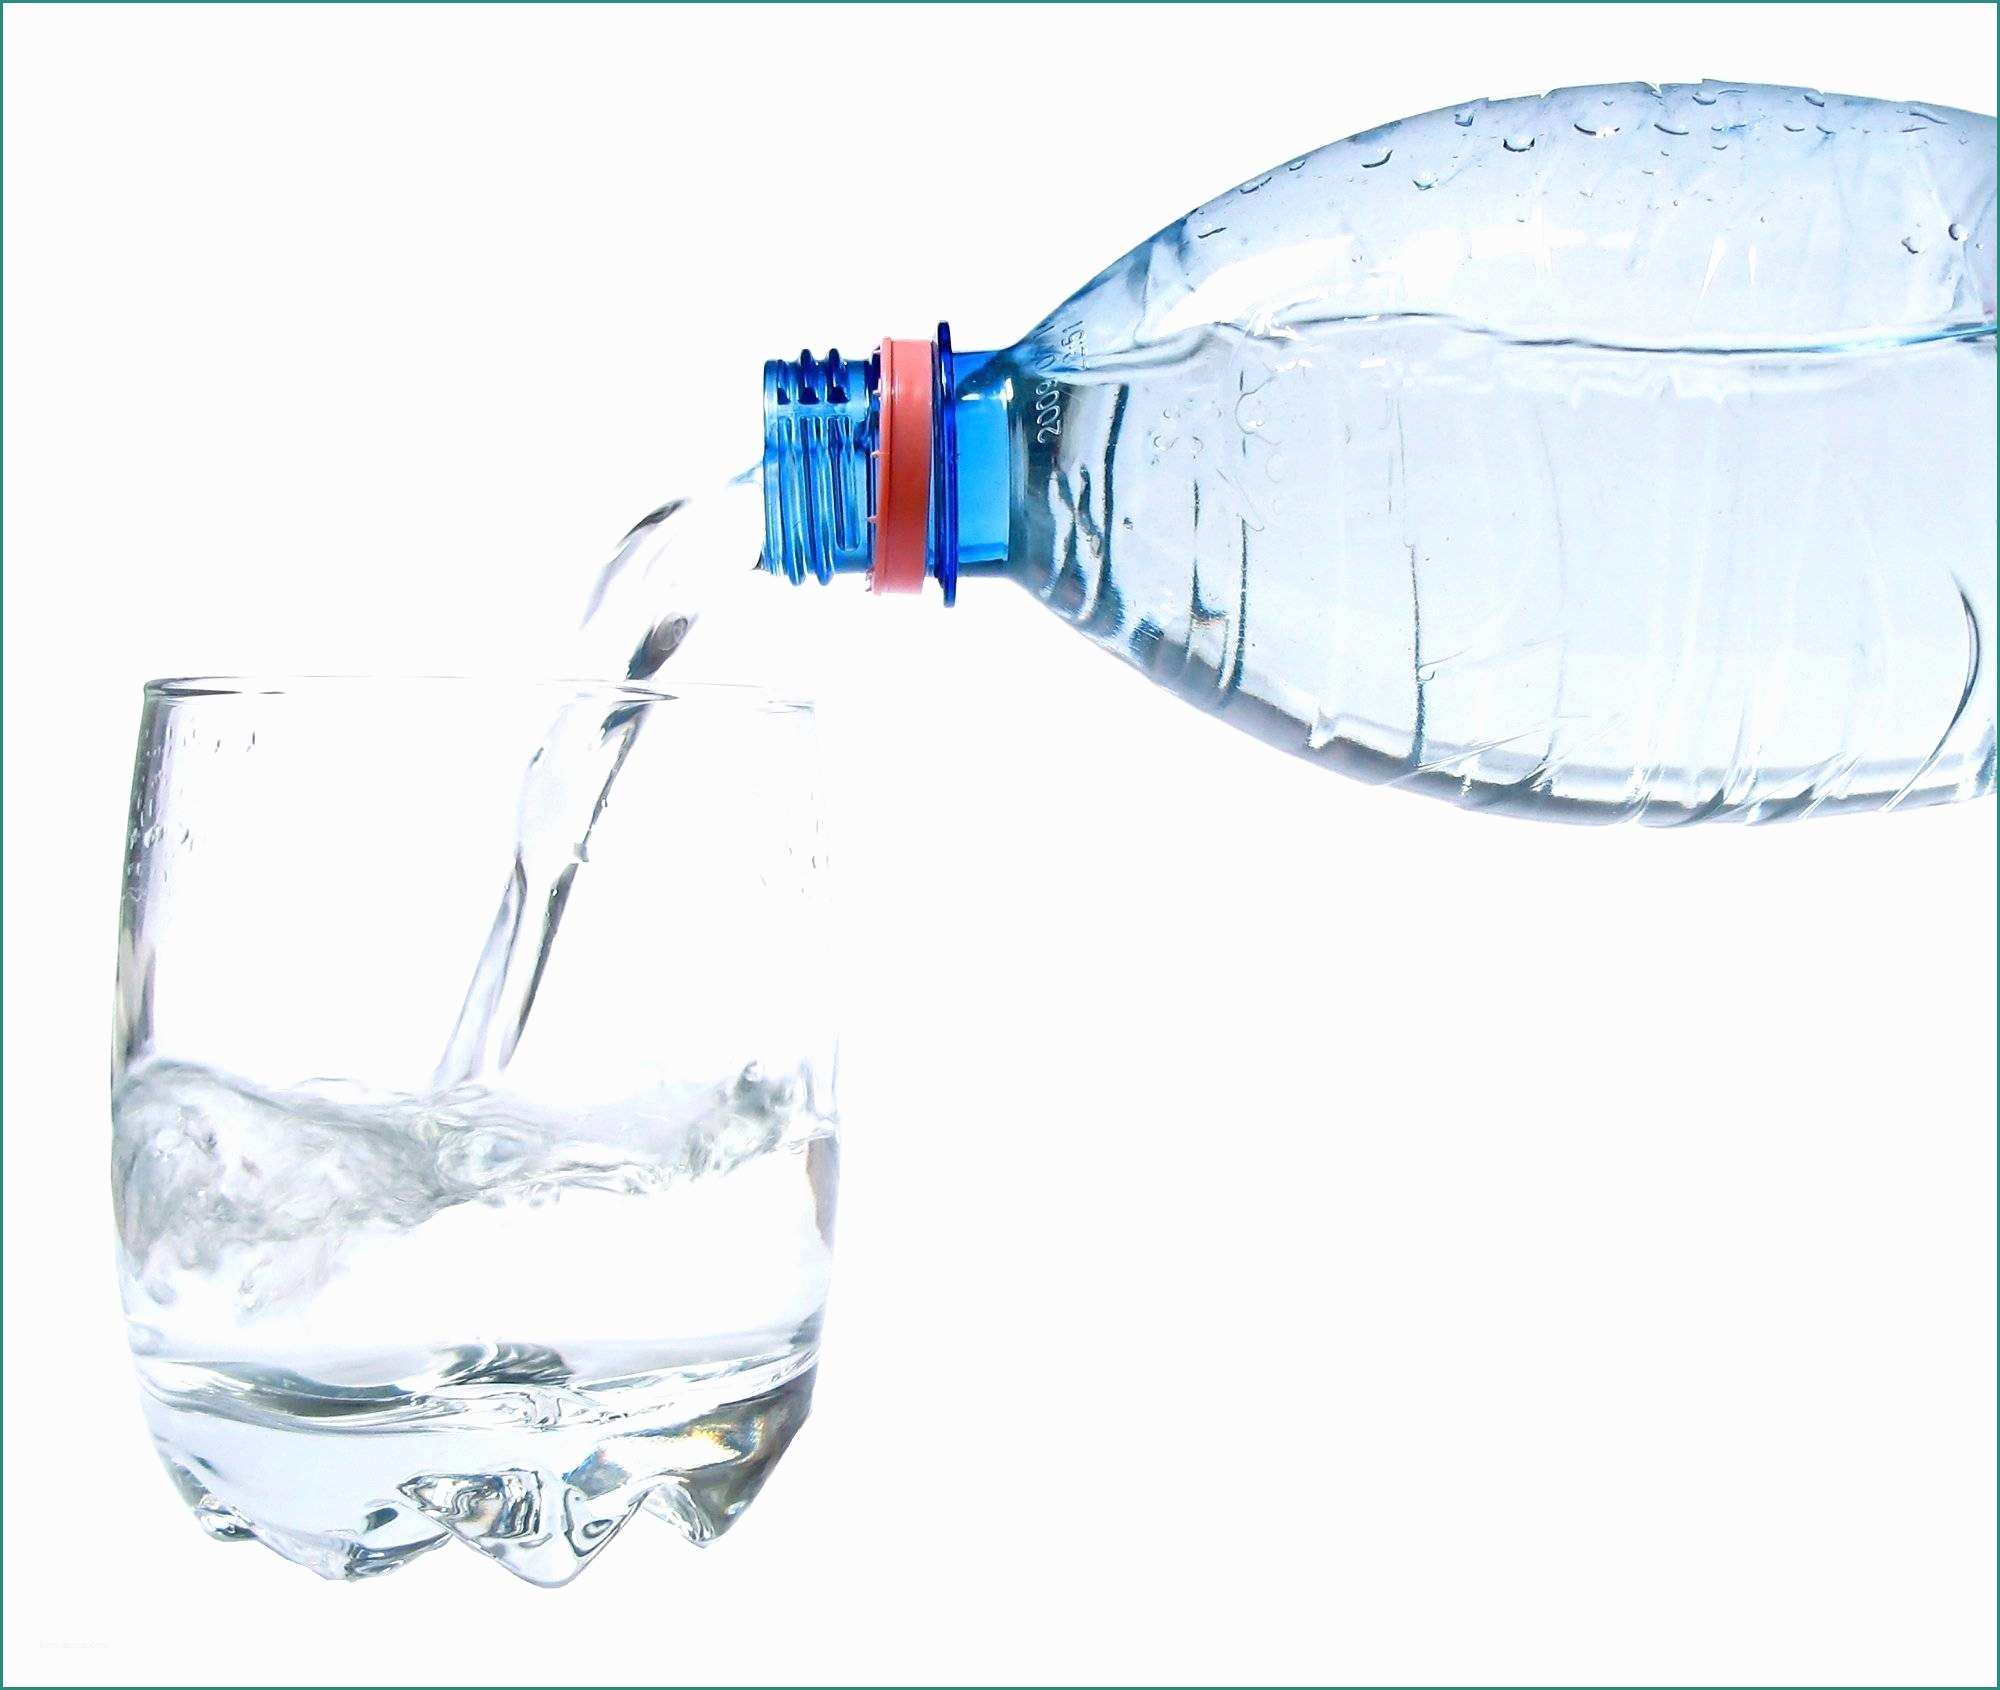 Acqua Alcalina In Bottiglia Marche E Acqua Minerale 42 Marche Nel Test Pubblicato Da Altroconsumo Avec